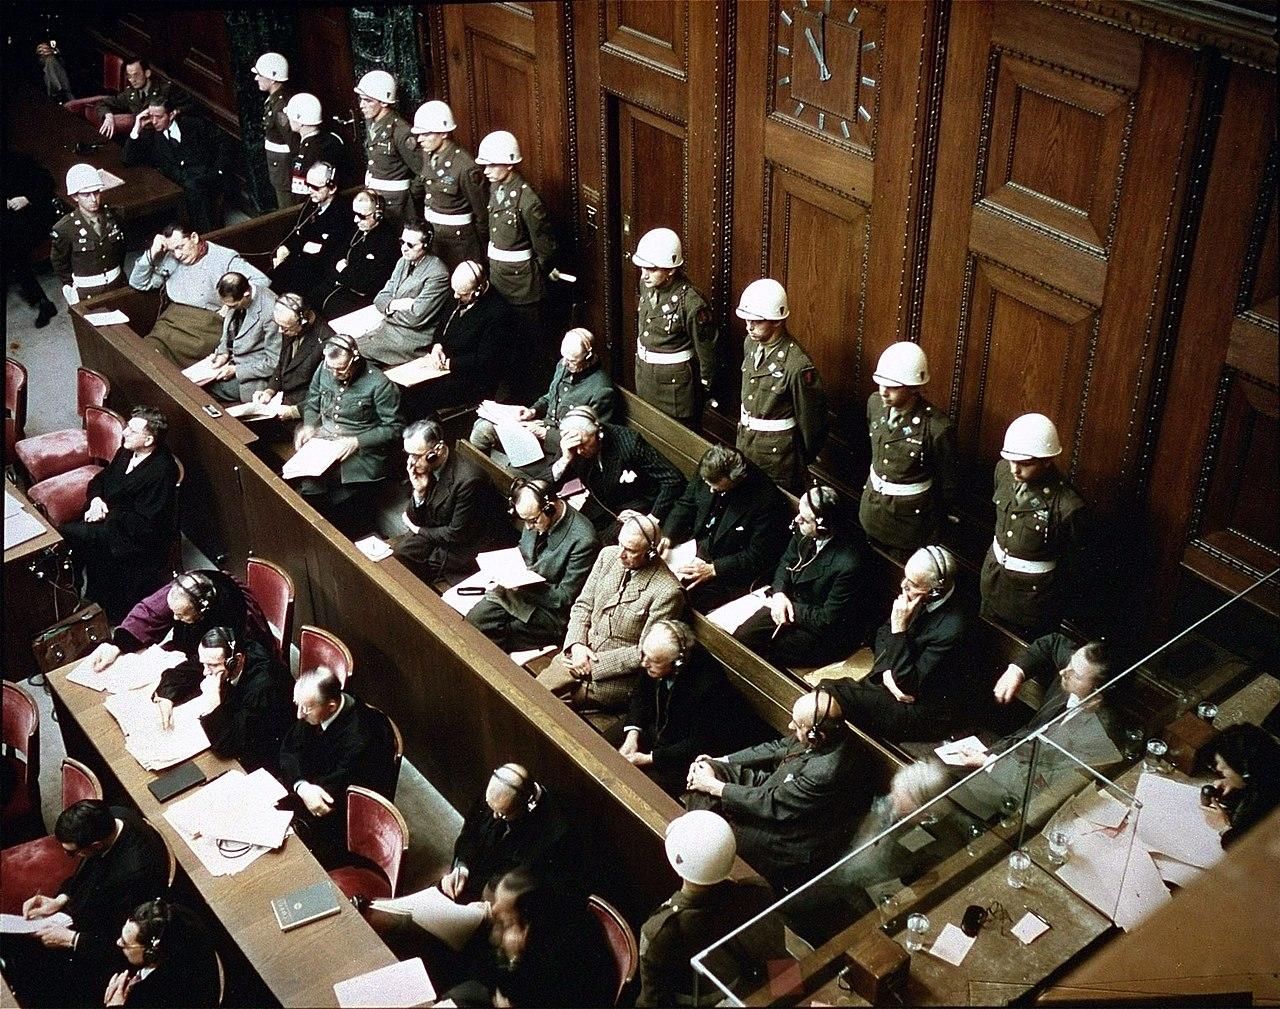 Soldater och människor i kostym i en stor rättssal.